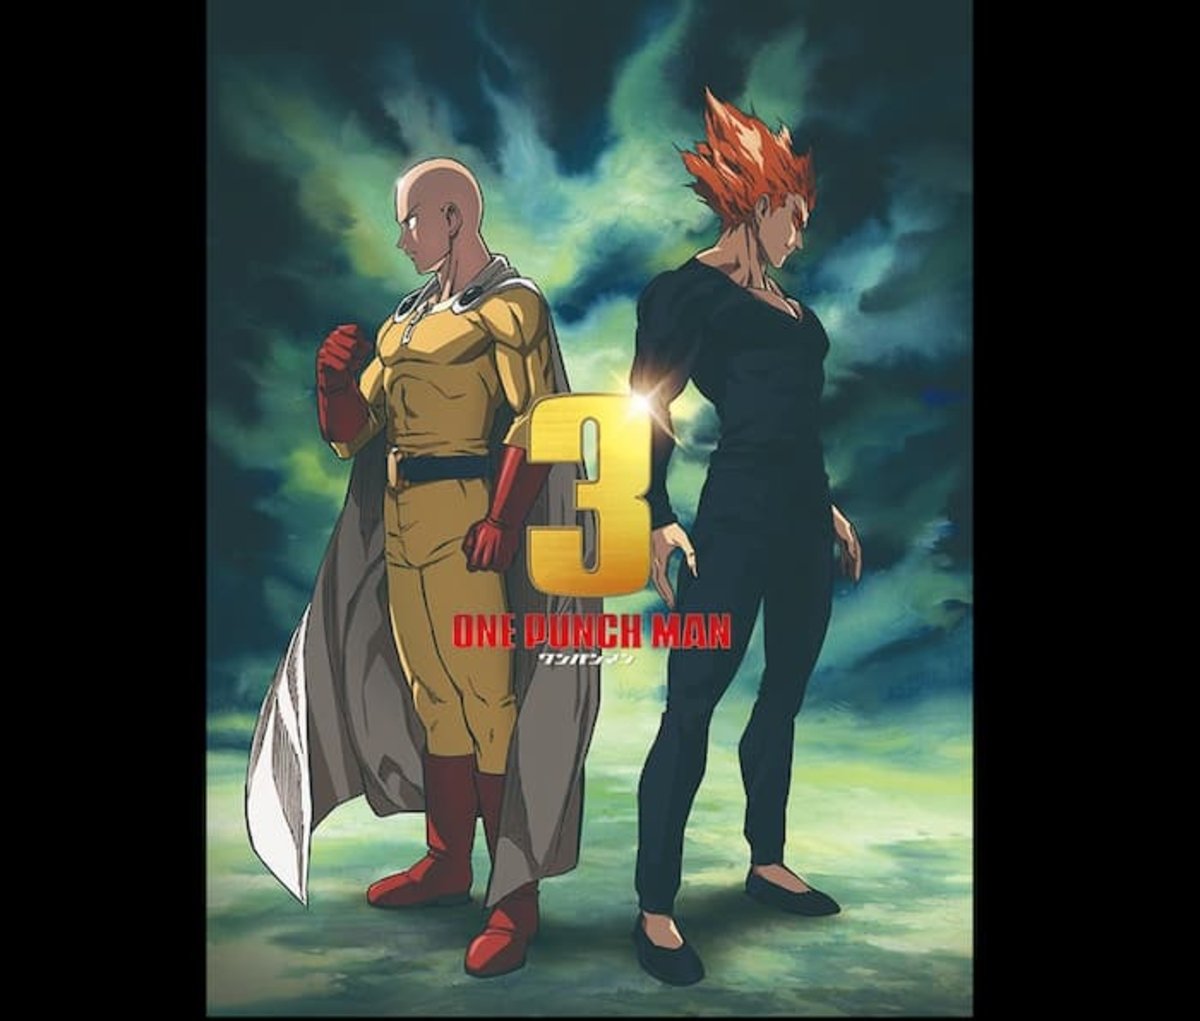 Con este póster alusivo, One, el creador de este anime, ha confirmado la tercera temporada